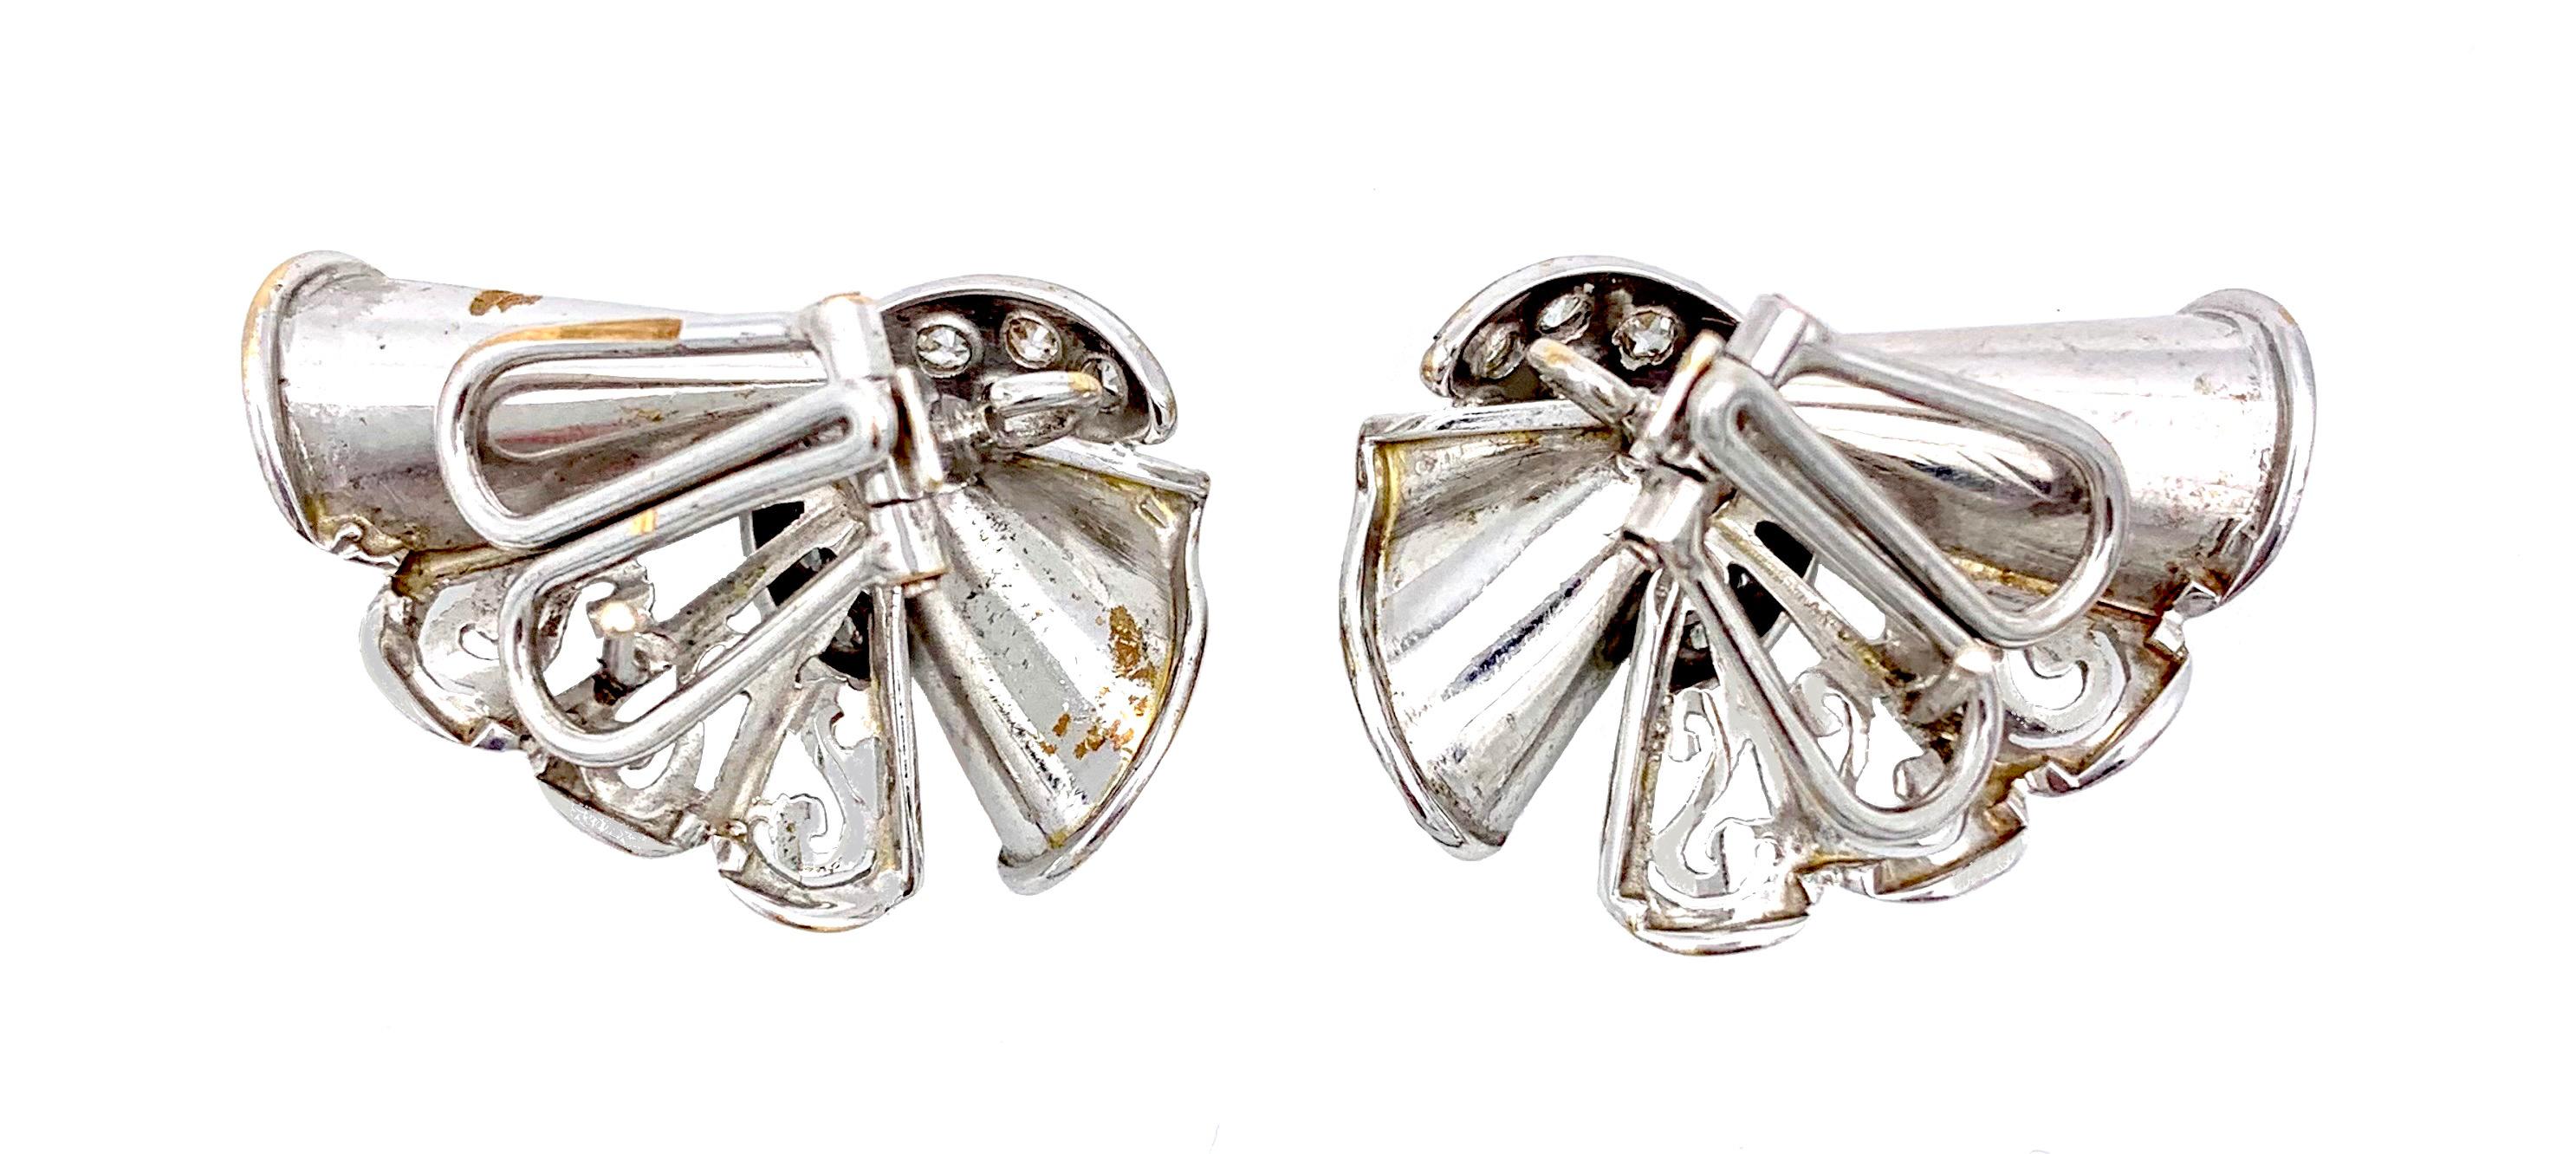 Diese Art Deco Clip-on Ohrringe wurden aus 14 Karat Gold gefertigt und anschließend rhodiniert. Das Design zeigt Schriftrollen mit durchbrochenen  Elemente, die an Spitze erinnern. Das Goldgewebe wird durch ein halbmondförmiges Element